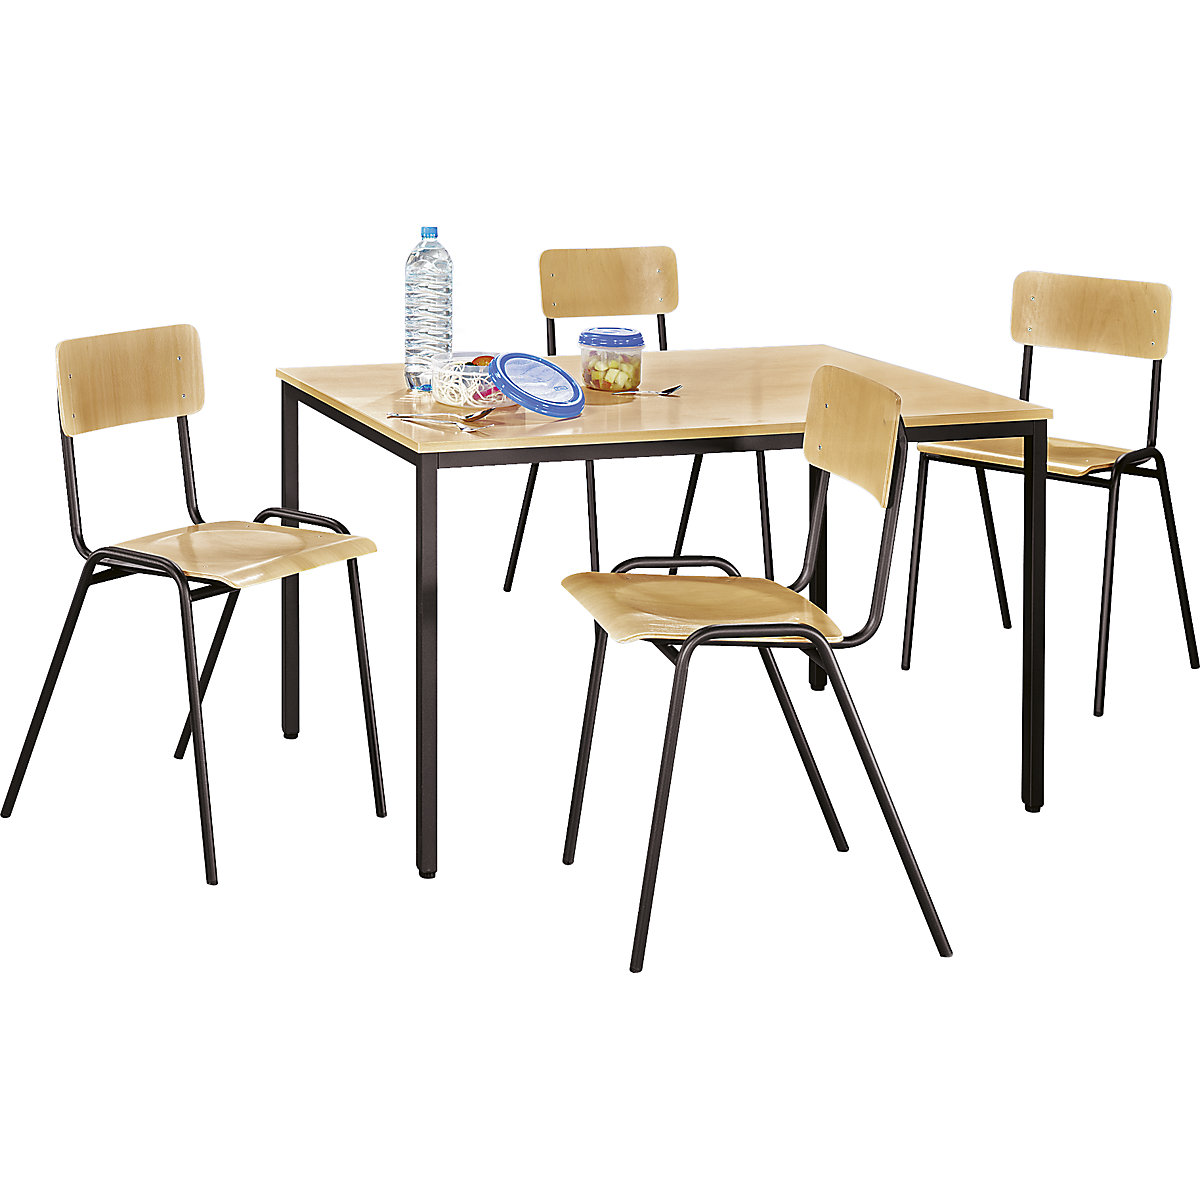 Conjunto de sillas y mesa multiusos – eurokraft basic, 1 mesa, 4 sillas, tablero de mesa en decoración de haya, armazón pardo grisáceo-4